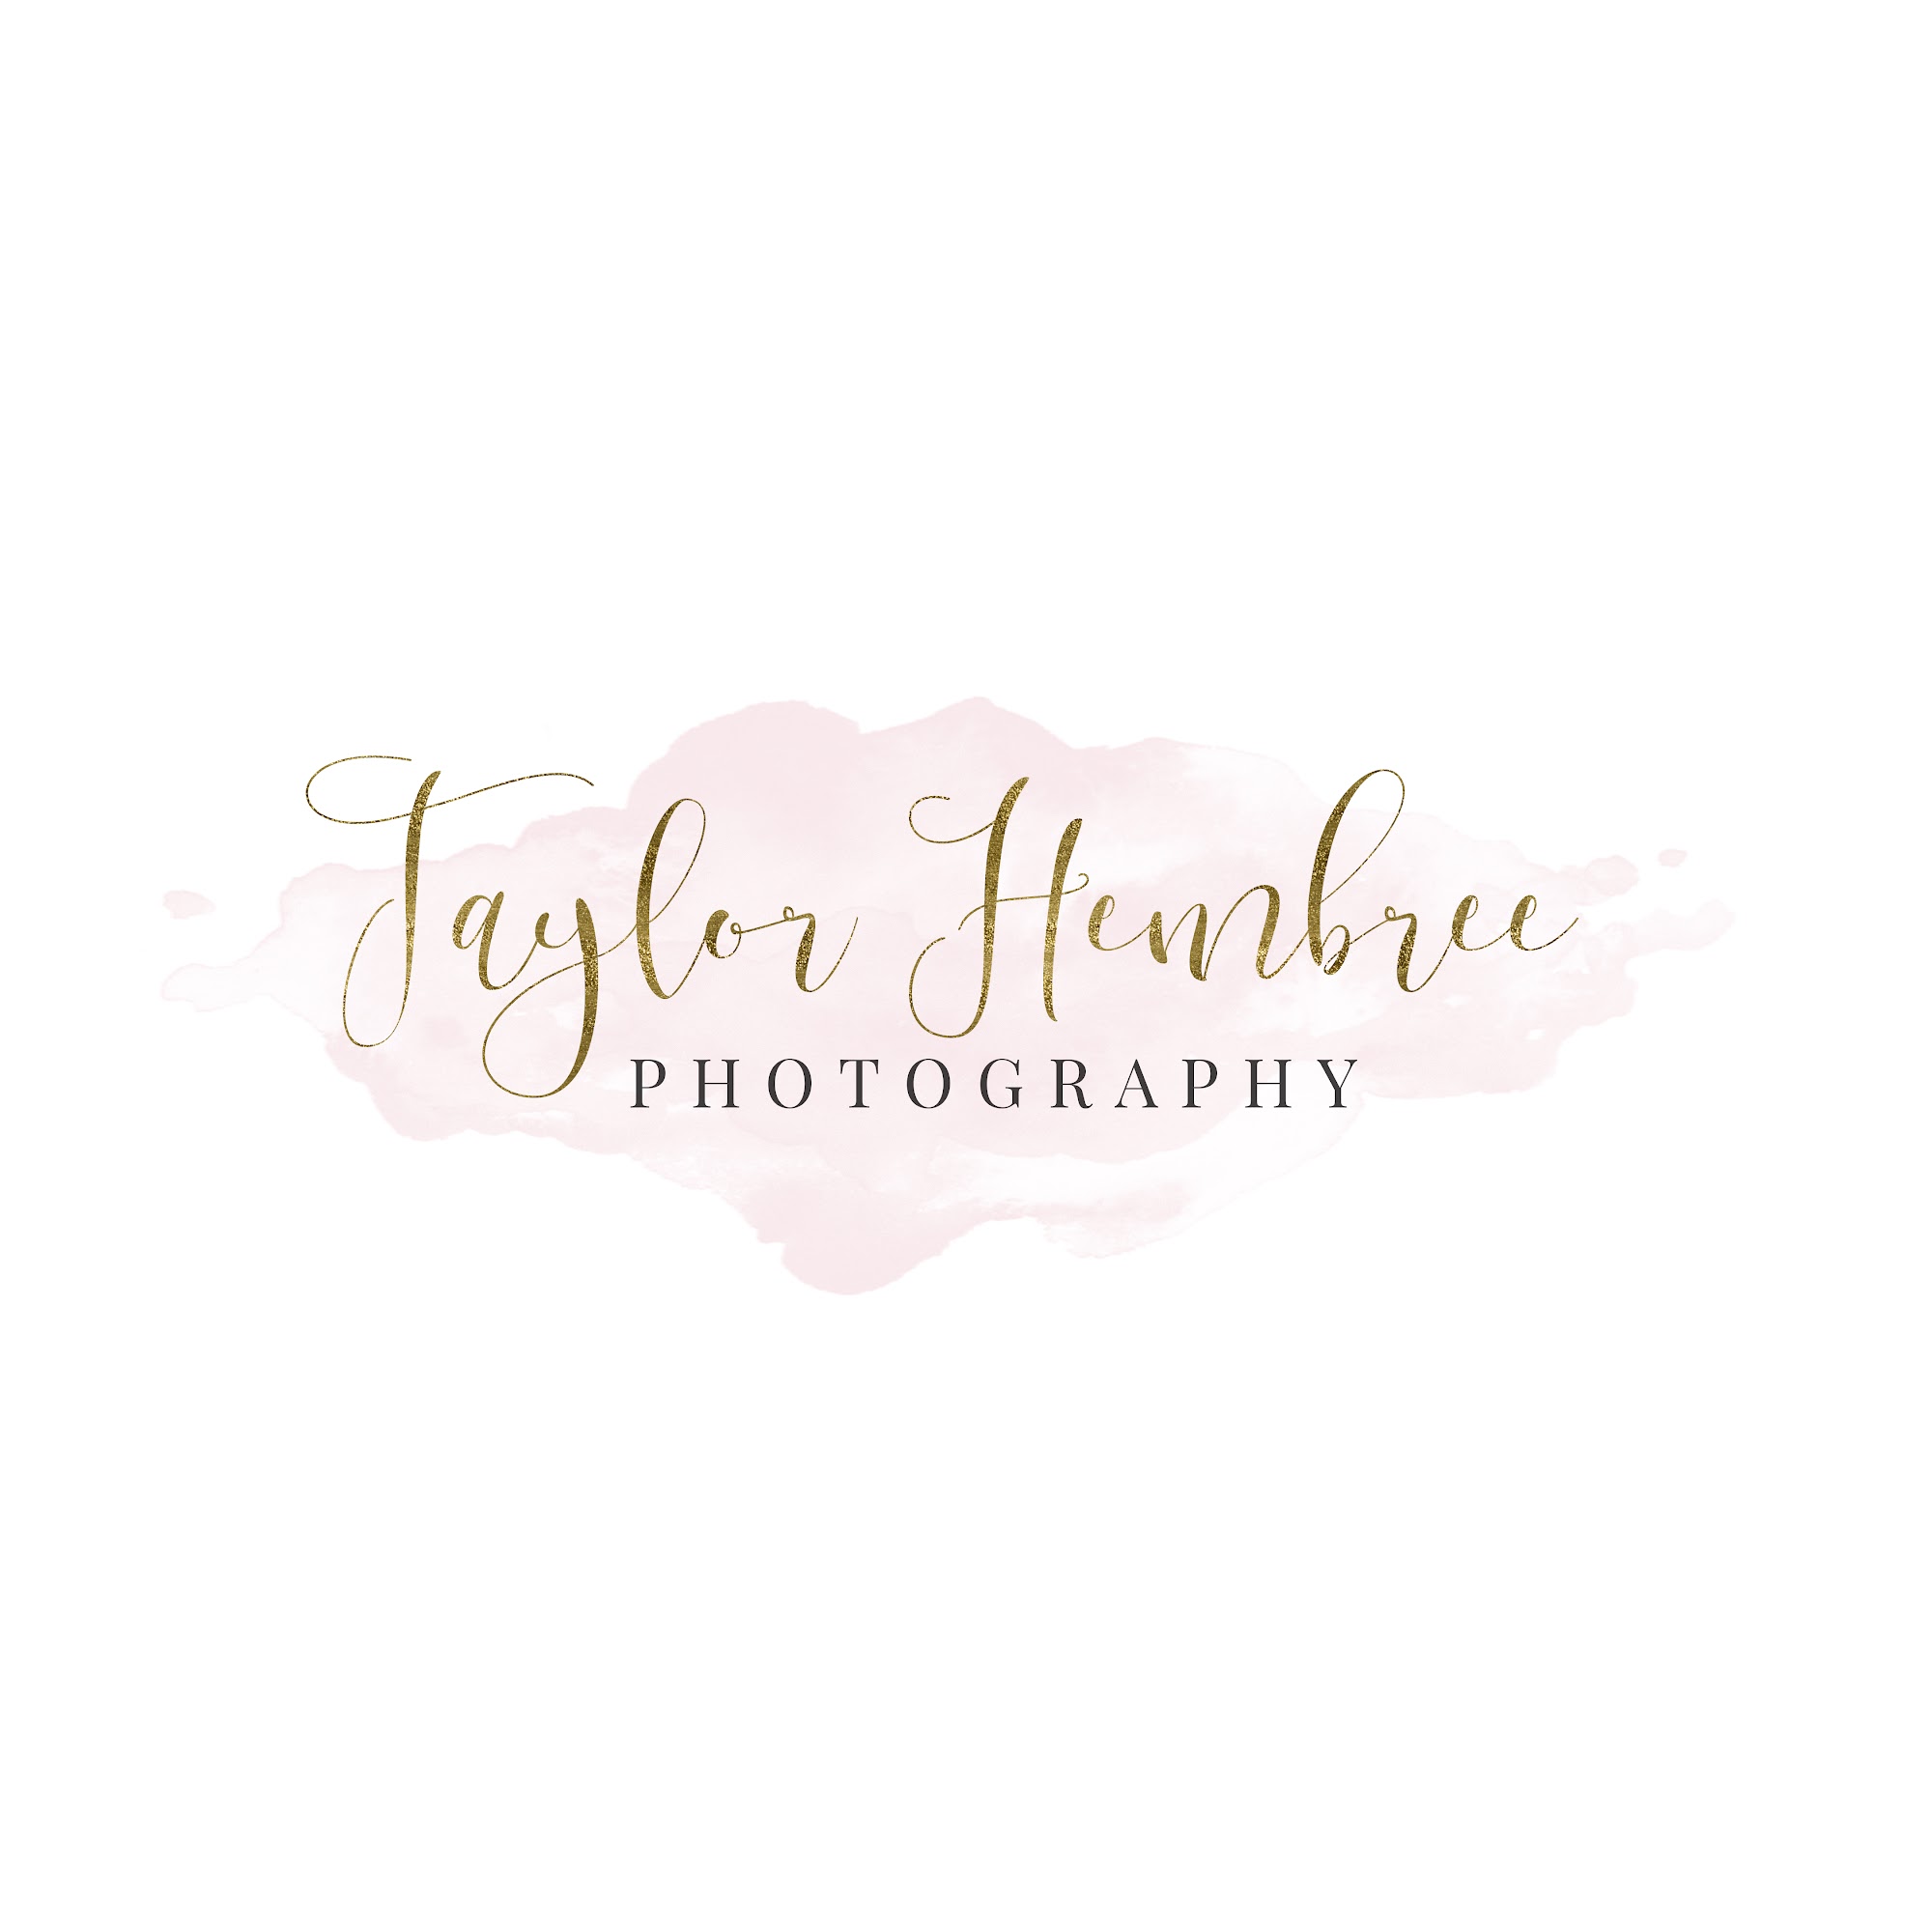 Taylor Hembree Photography 65119 E 130 Rd, Wyandotte Oklahoma 74370